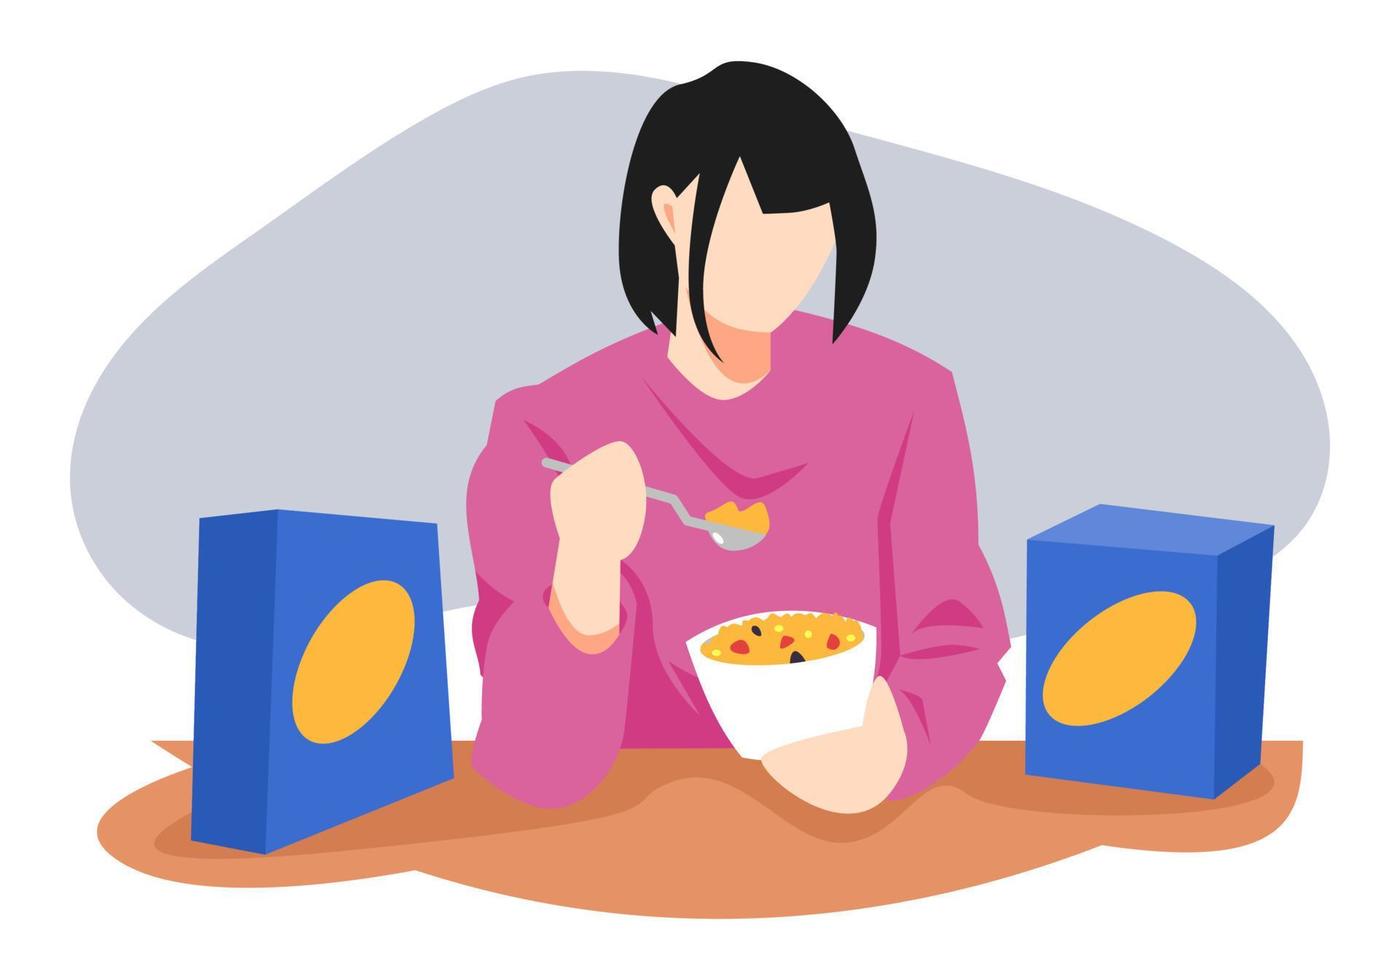 Teenager-Mädchen mit kurzen Haaren, das Müsli isst. Cornflakes-Box. konzept von frühstück, essen, gesundheit, aktivität usw. flache vektorillustration vektor